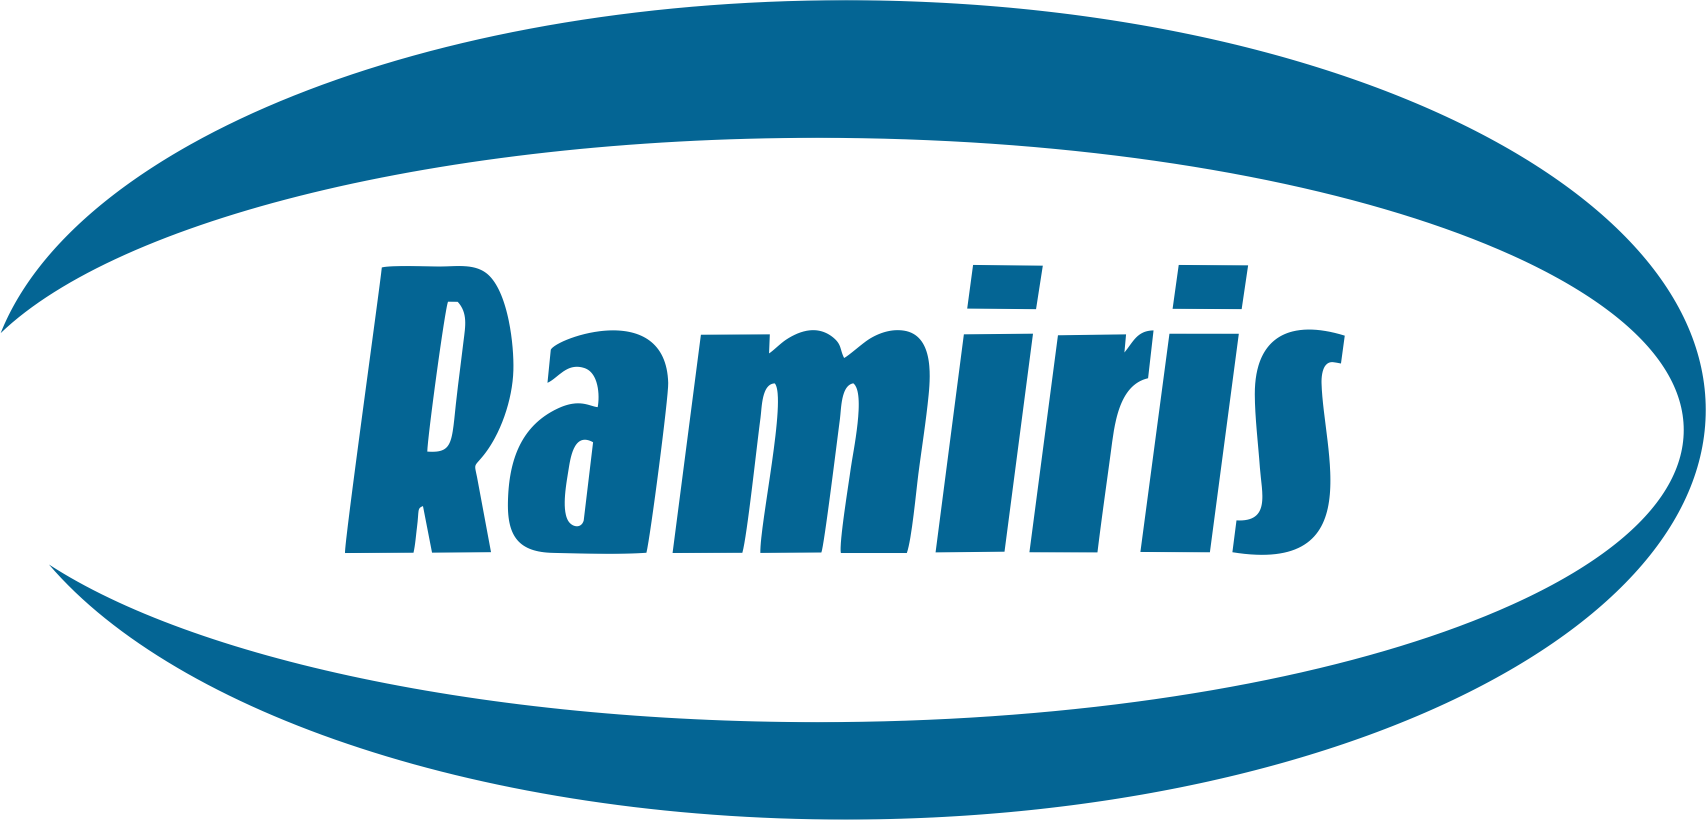 Ramiris